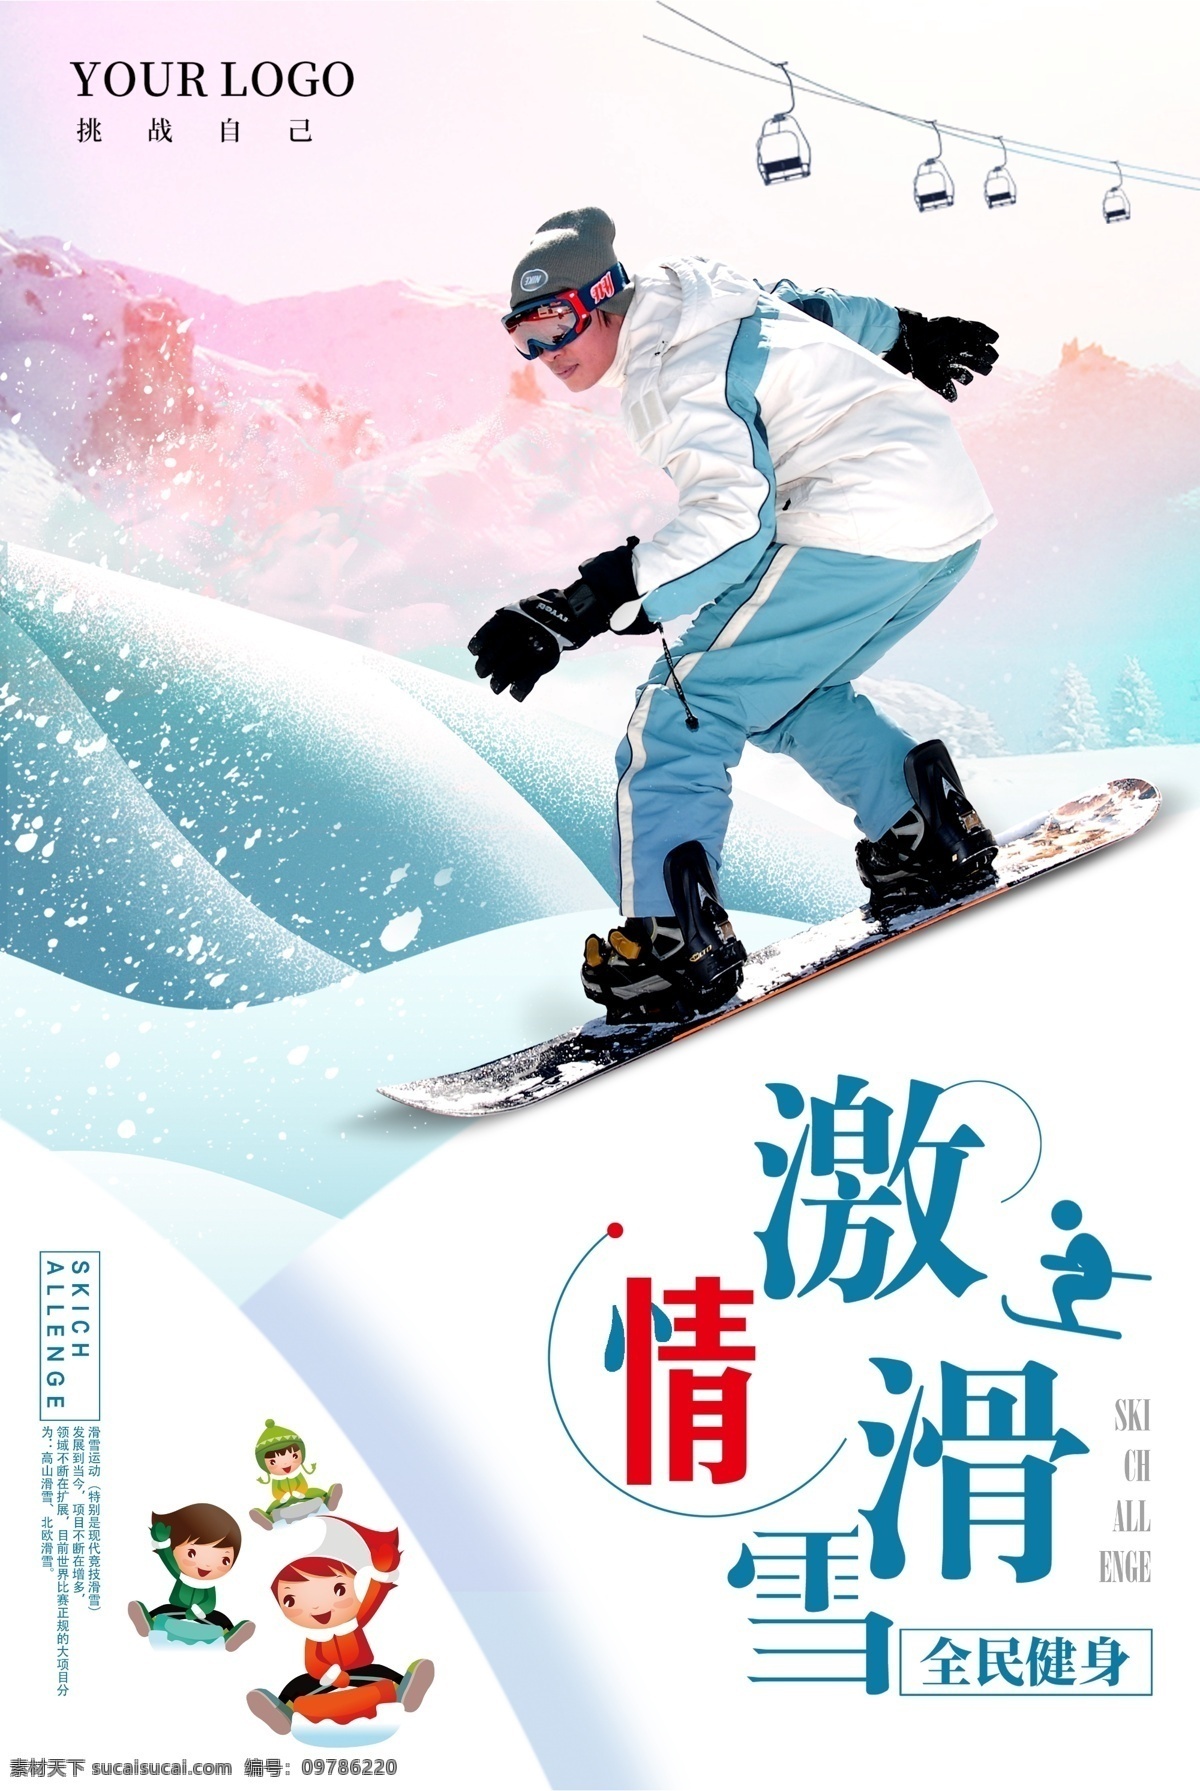 激情 滑雪 海报下载 旅游 圣诞节 蓝色 模板 冬季 滑雪活动 冬季主题海报 活动 派对 海报 爬山 雪山 冷色海报 激情滑雪 传单设计 滑雪派对 滑冰 冰雪节海报 体验 蓝色模板 全民 冬季模板